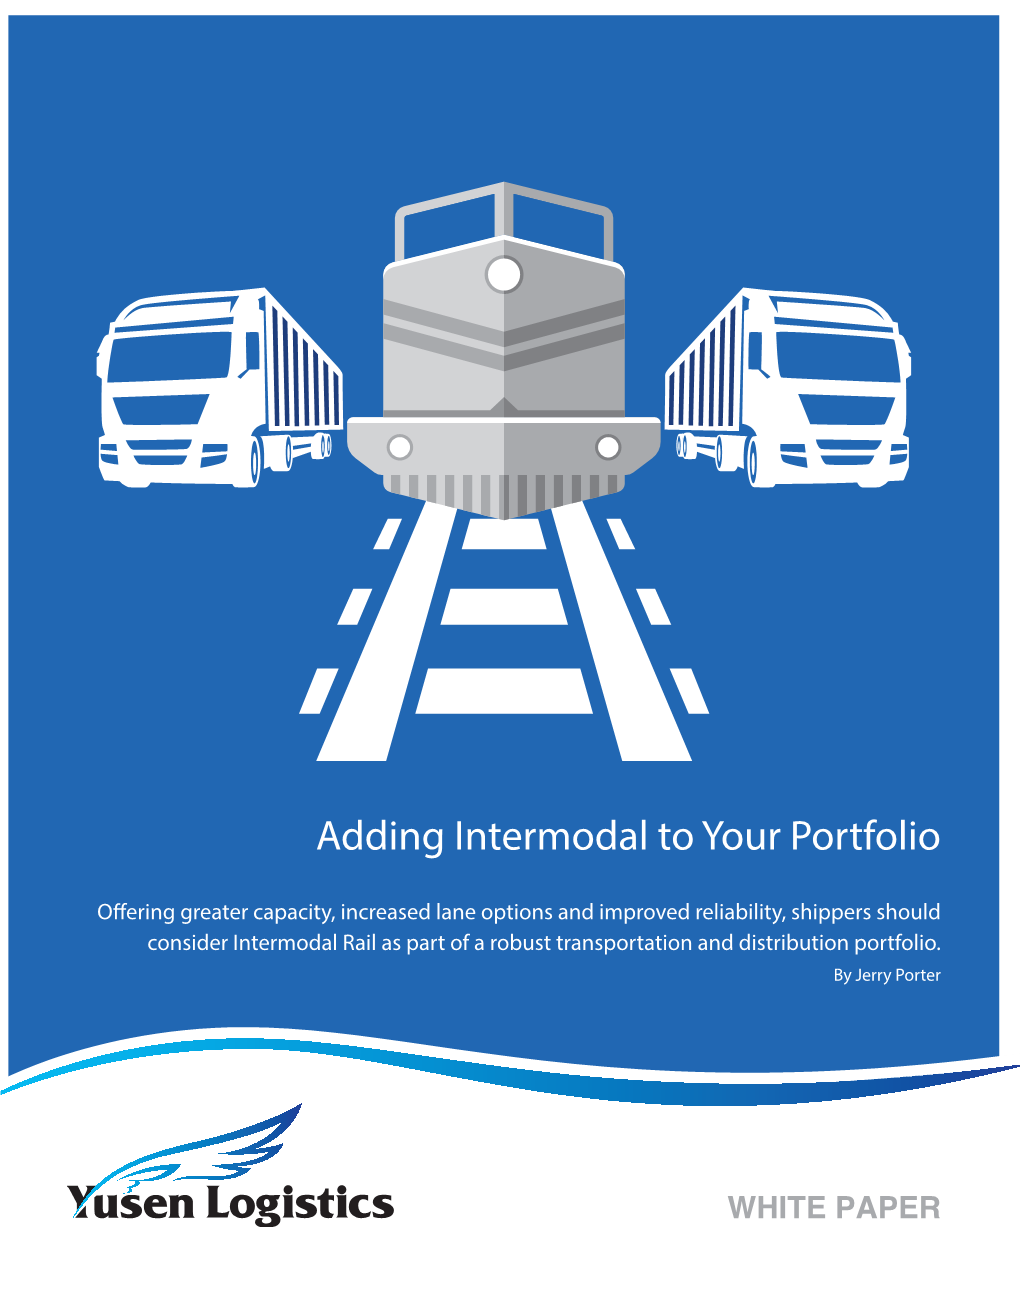 Adding Intermodal to Your Portfolio